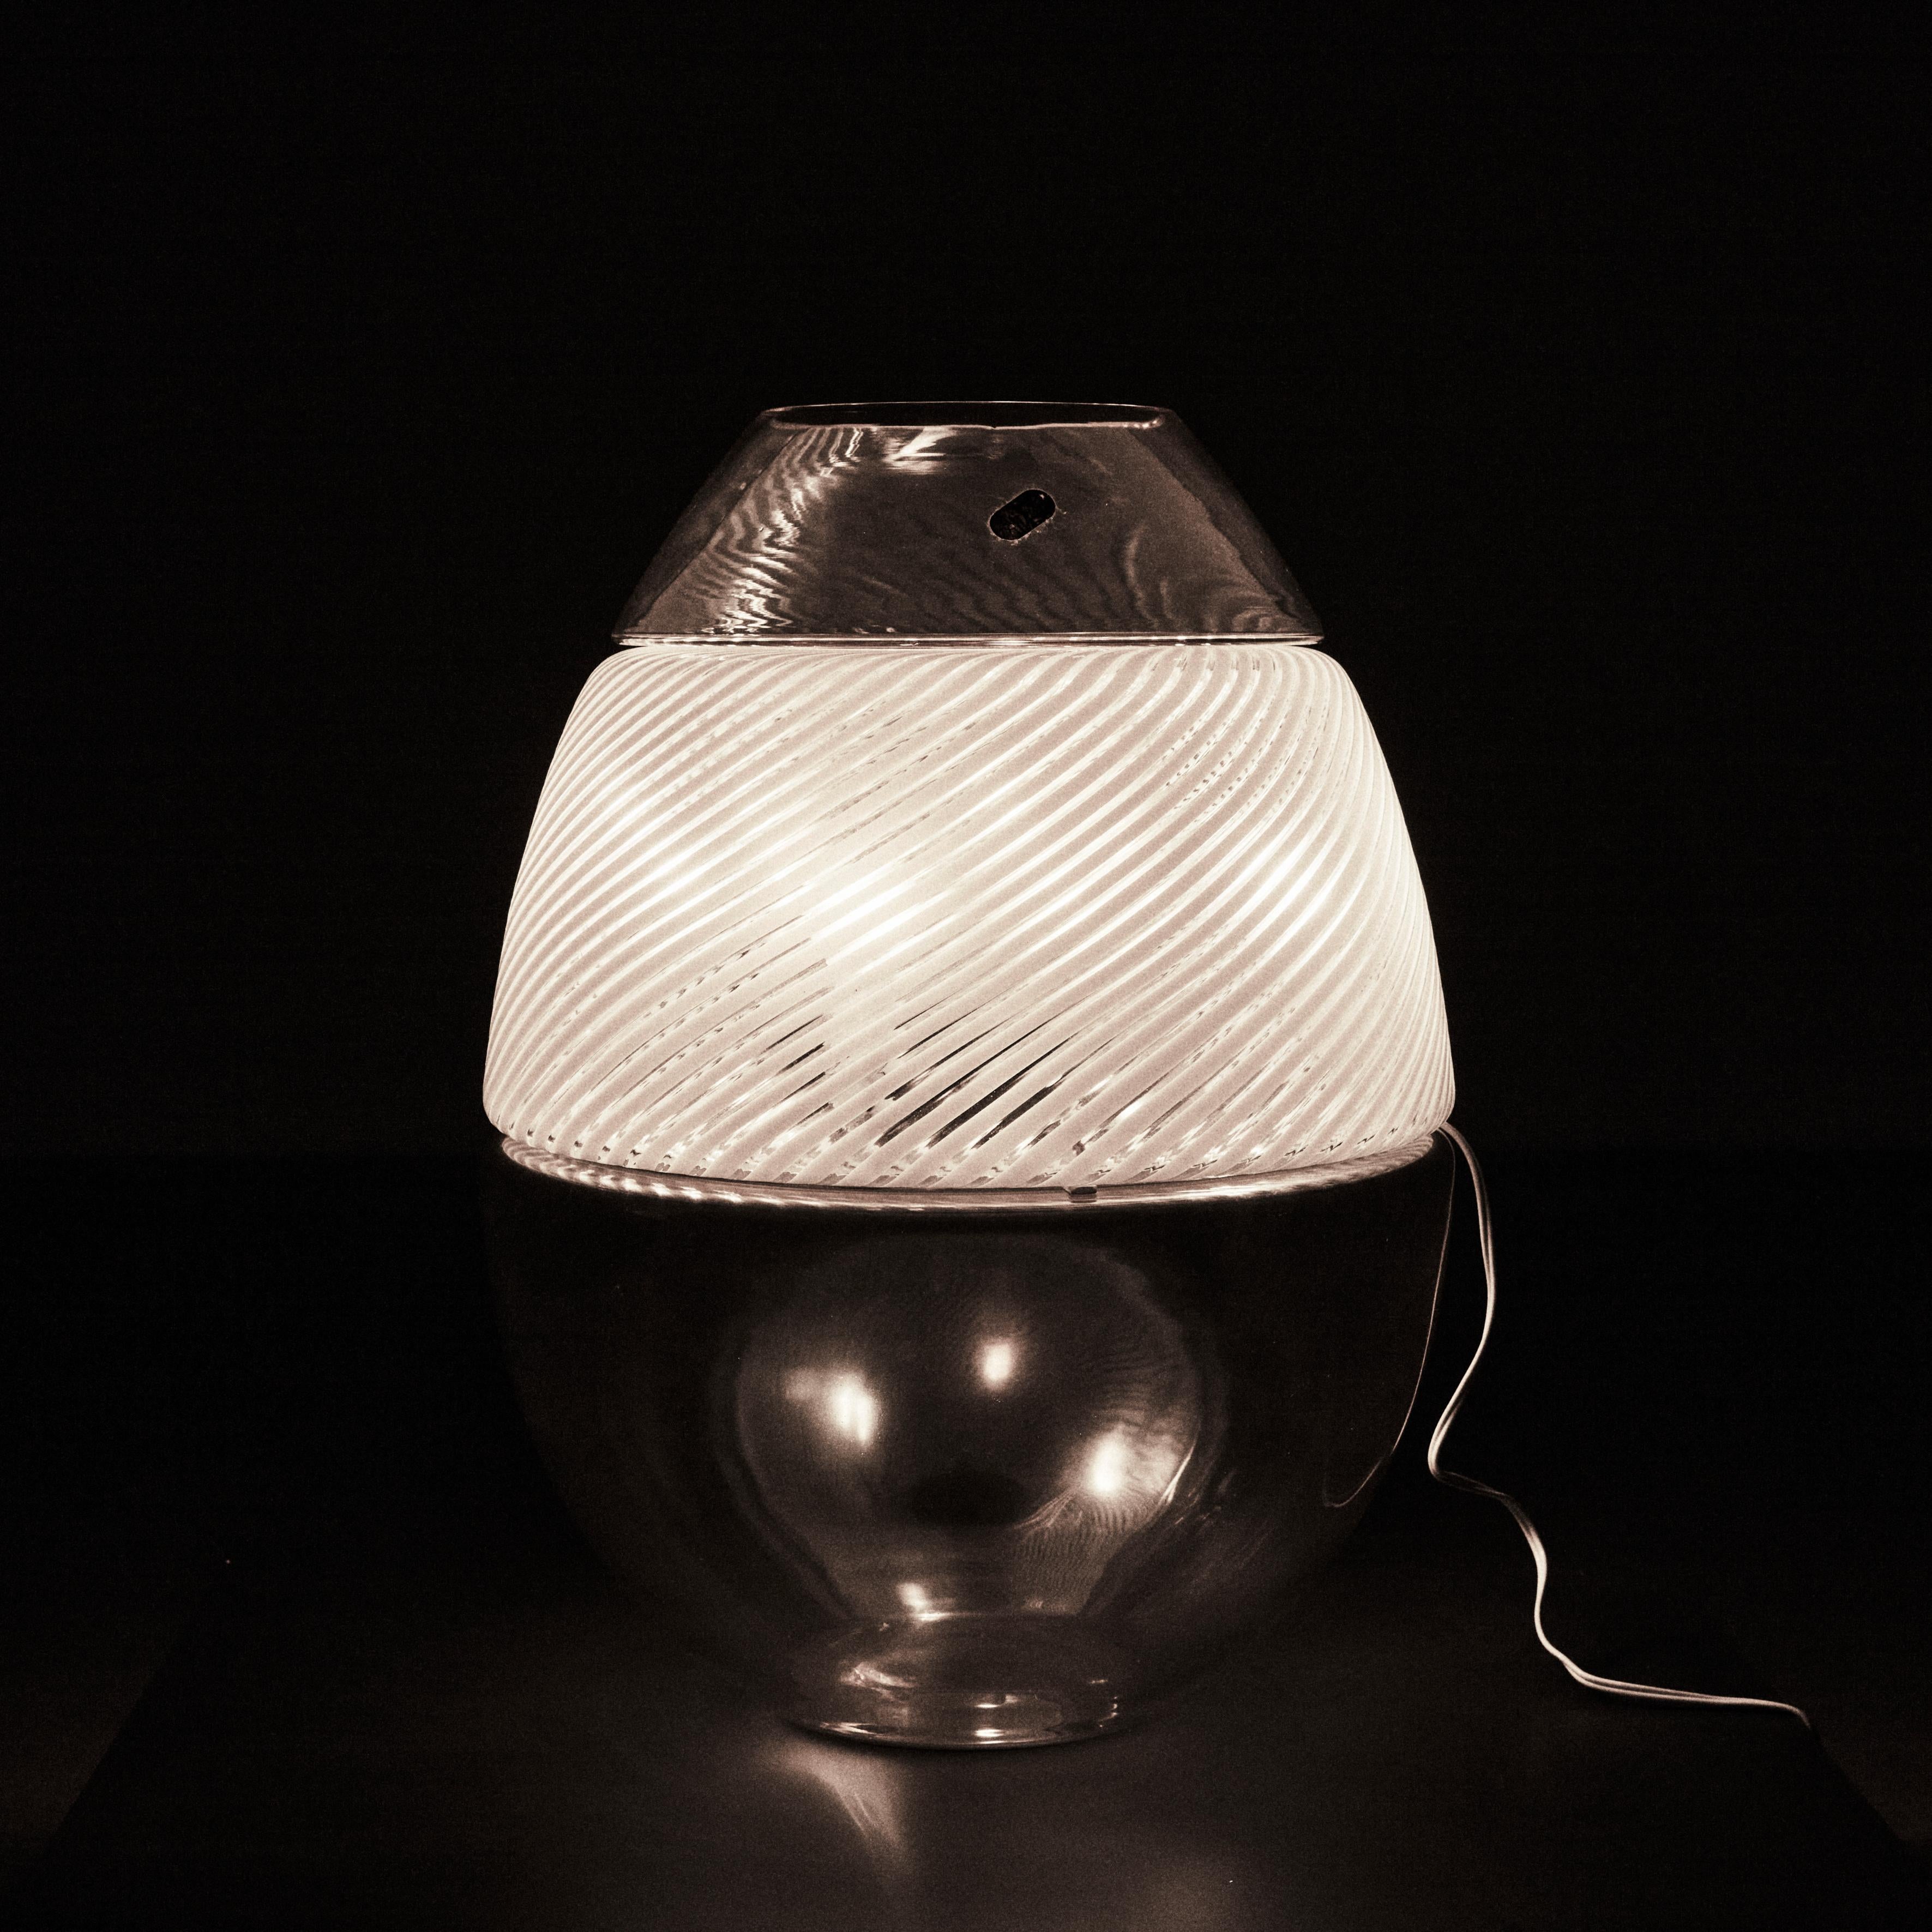 Lampe/Vase aus Muranoglas, Entwurf von Carlo Nason, Produktion Mazzega, 1970er Jahre. Großes Objekt aus ineinander greifenden, rauch- und bernsteinfarbenen Glassektoren und einem filigranen Glaselement. Die Lampe ist ein Lagerartikel, trägt das